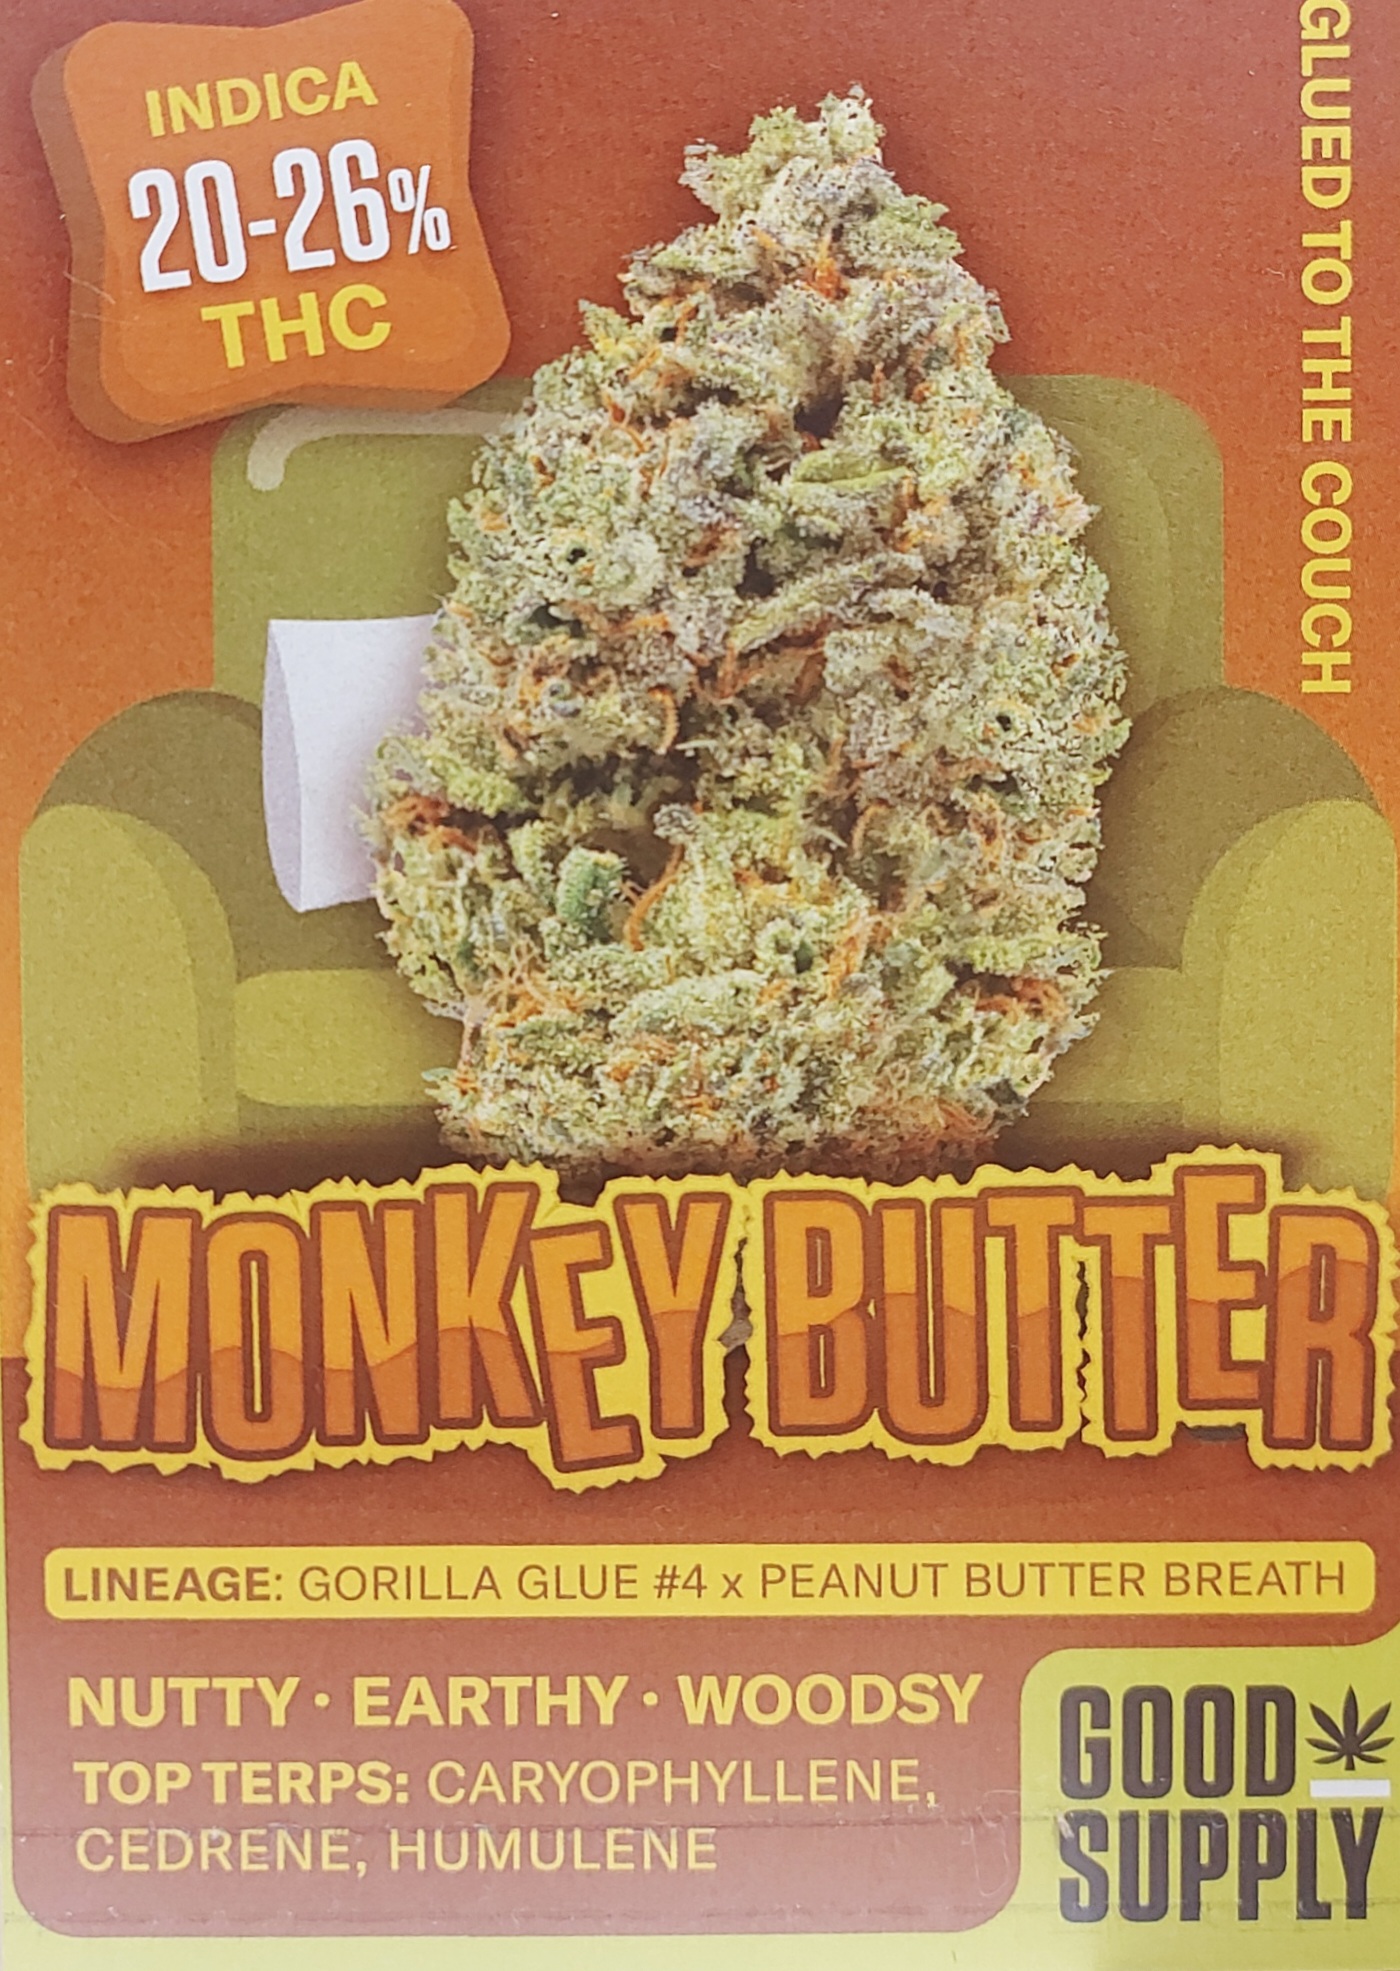 Monkey Butter